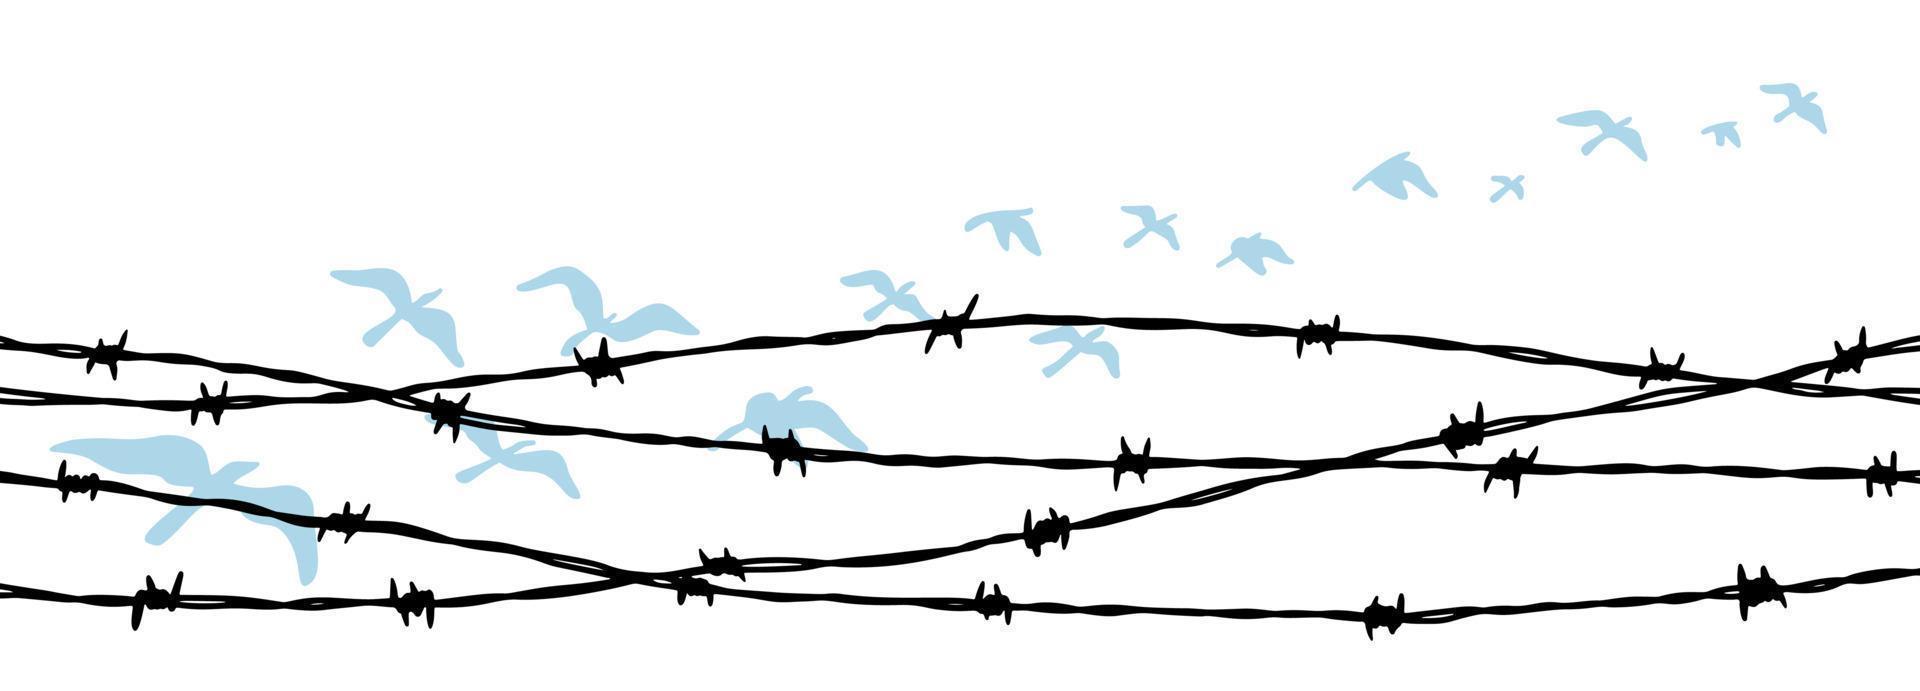 oiseaux volants derrière une clôture de barbelés. notion de liberté. illustration vectorielle dessinés à la main vecteur